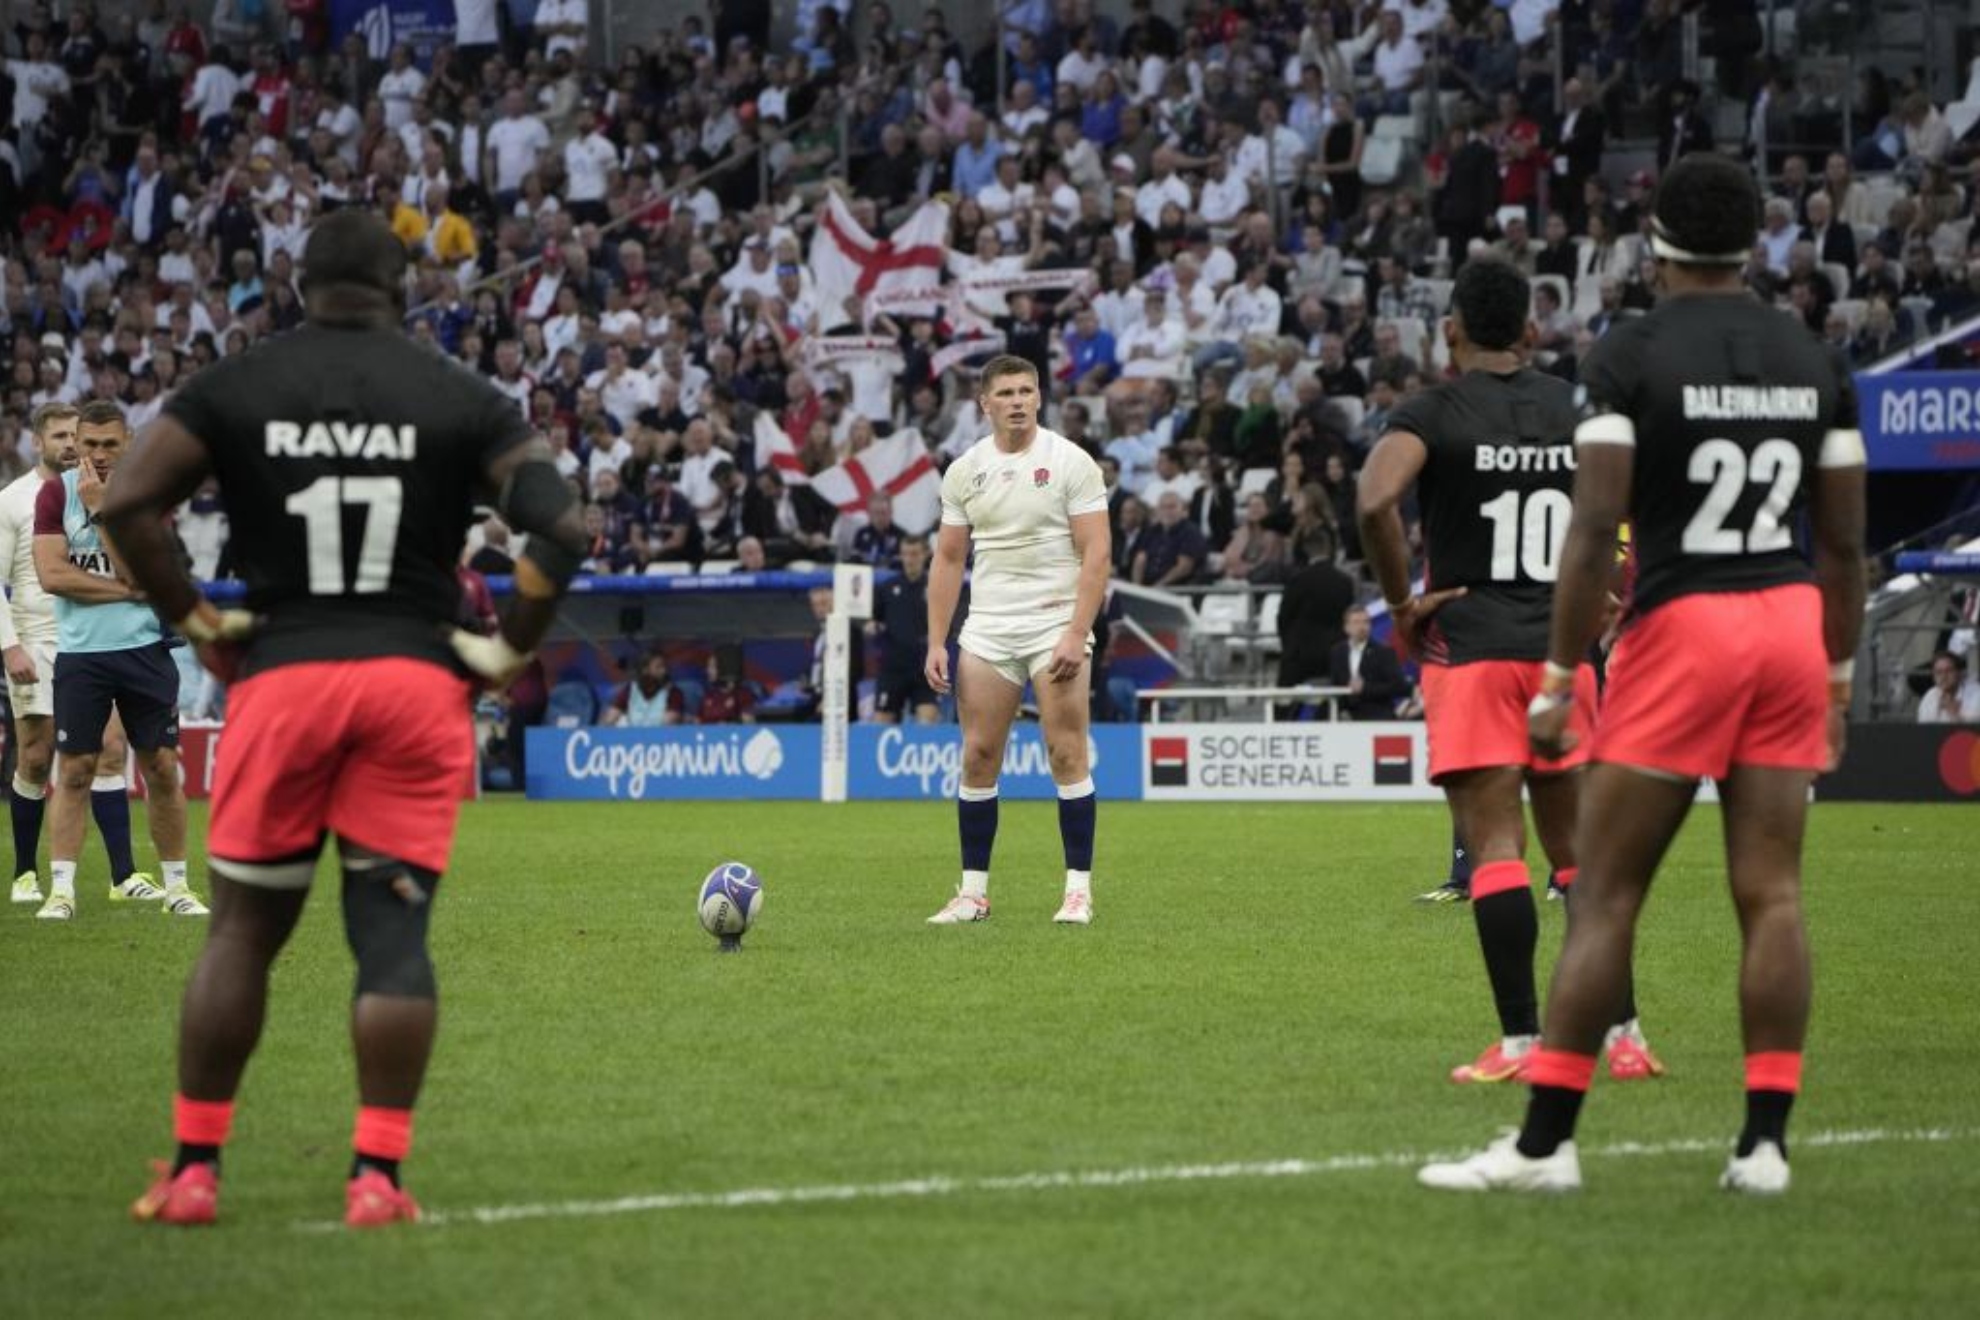 Inglaterra llega a semifinales gracias al pie de Farrell y los errores de Fiji